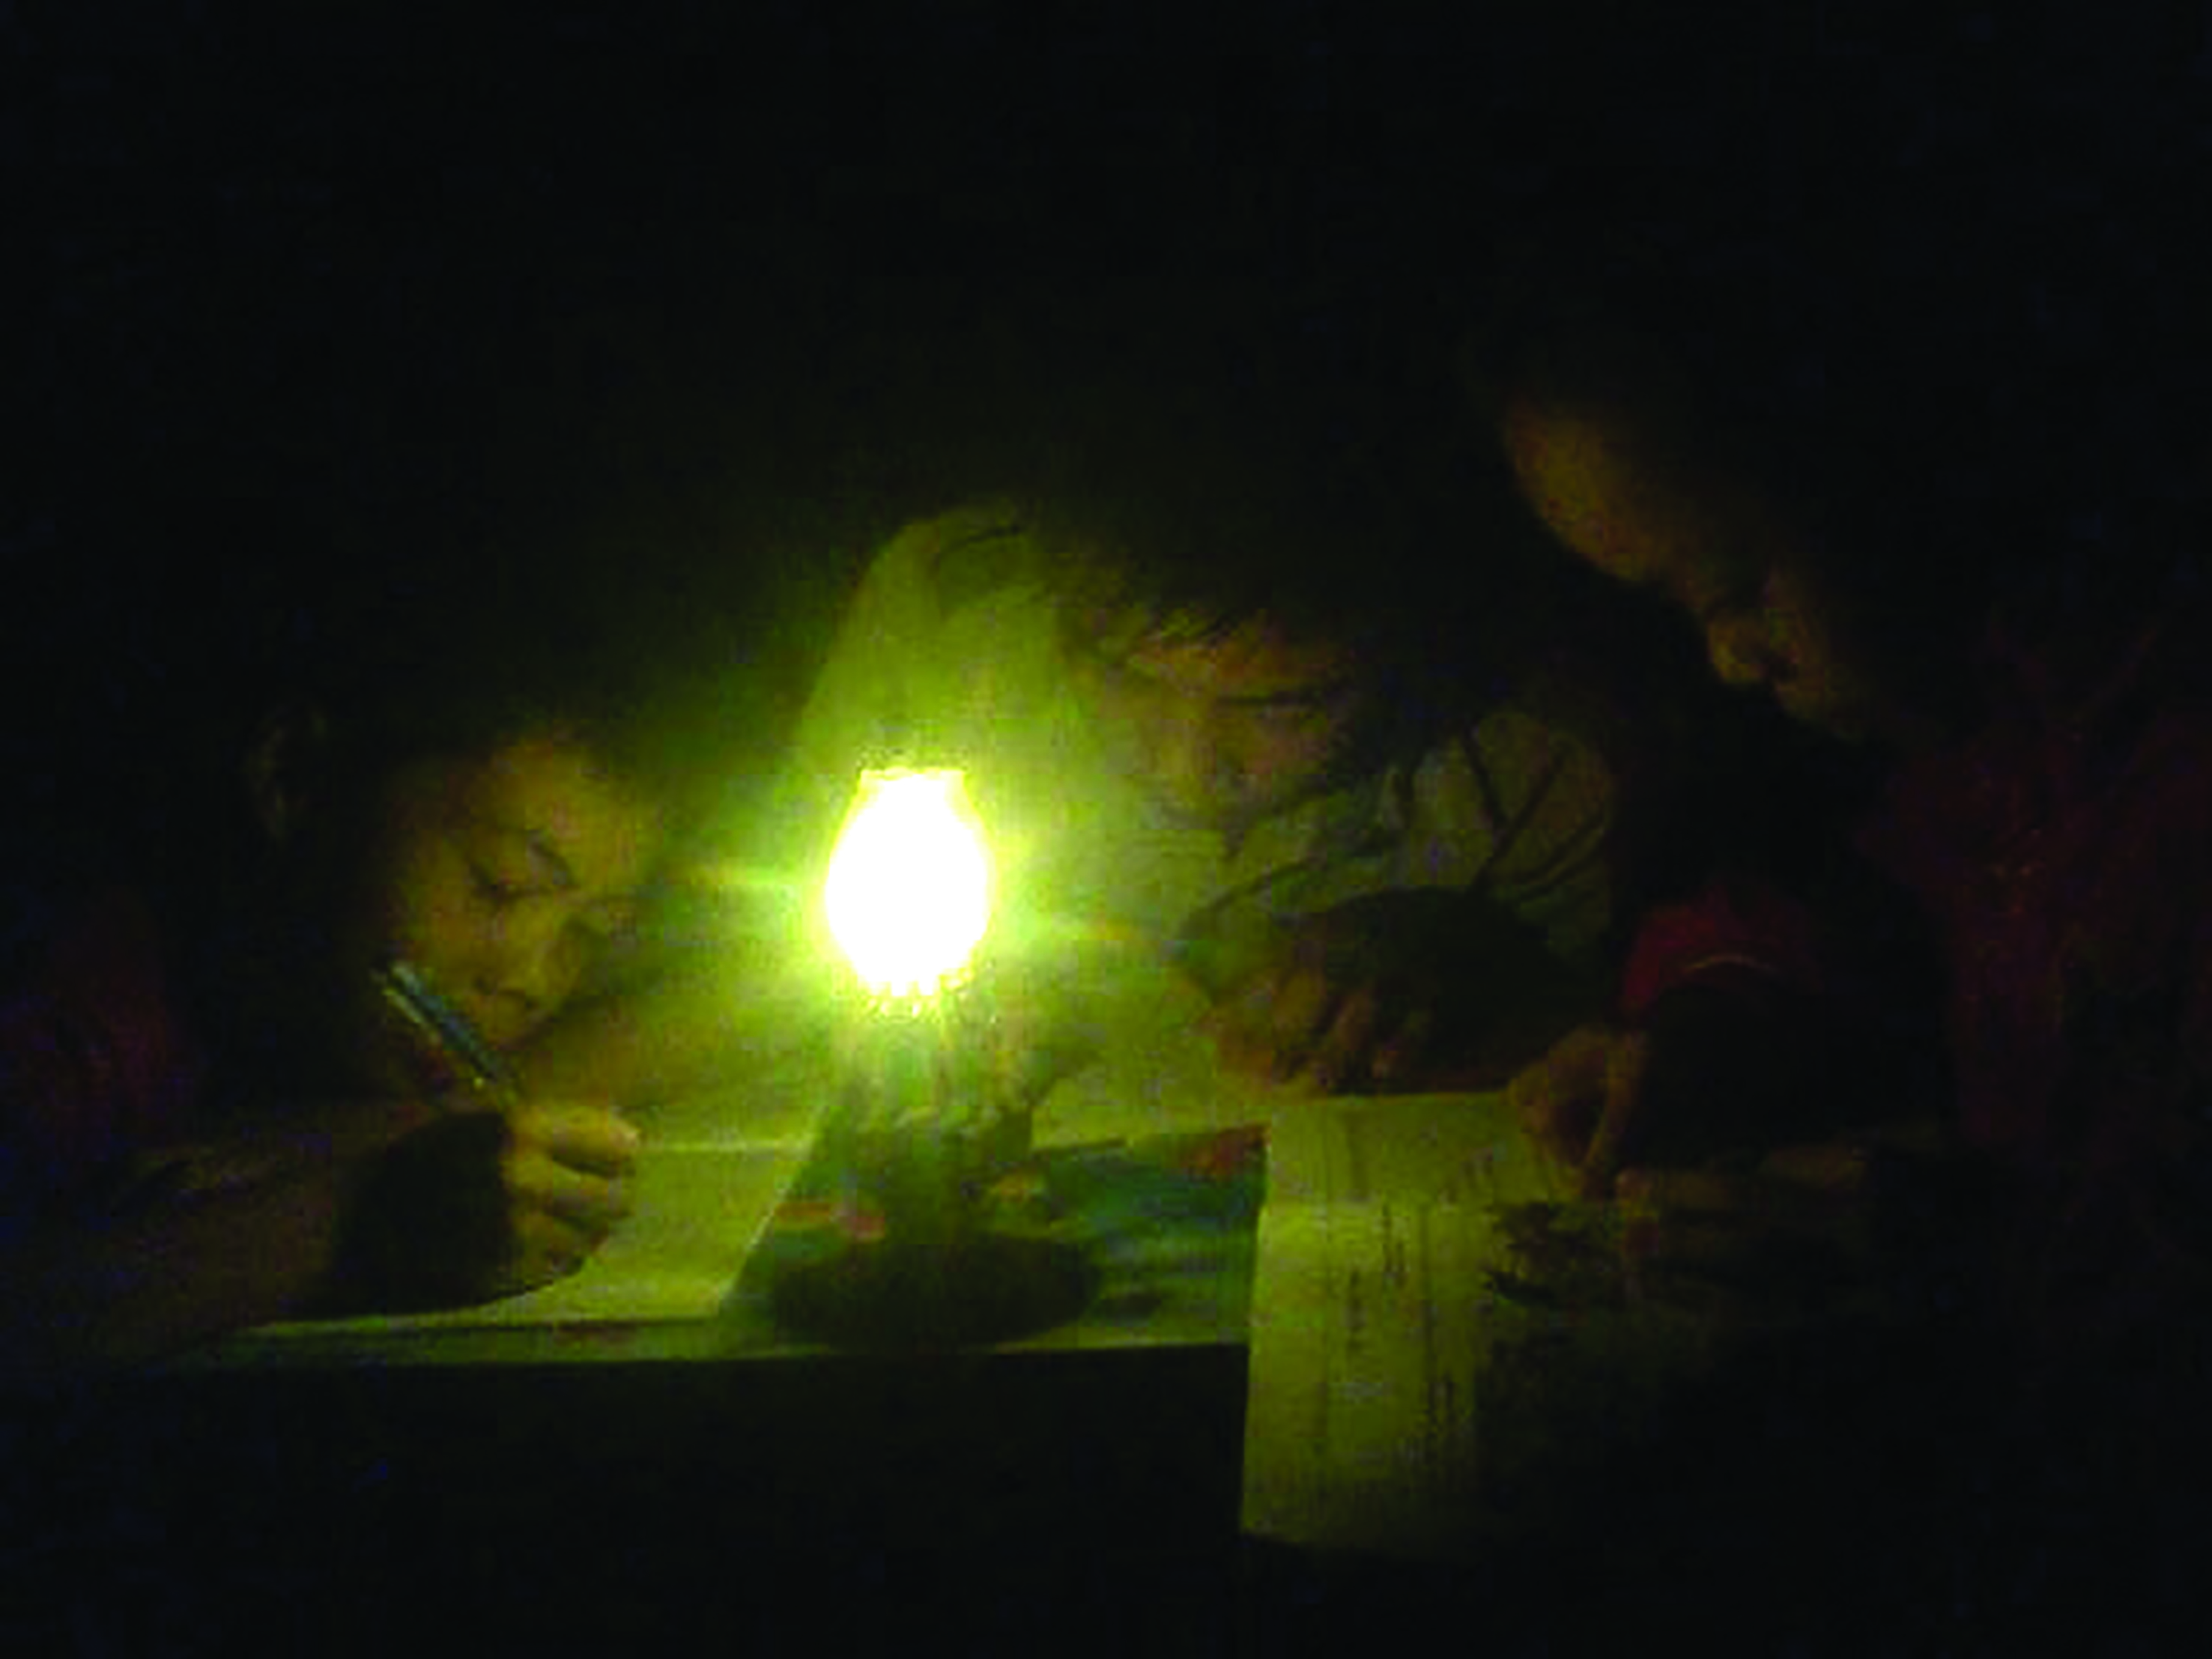 Hơn 20 năm nay những đứa trẻ trong Tiểu khu 7 phải học chung nhau dưới ánh sáng của chiếc đèn dầu- Ảnh: T.H 